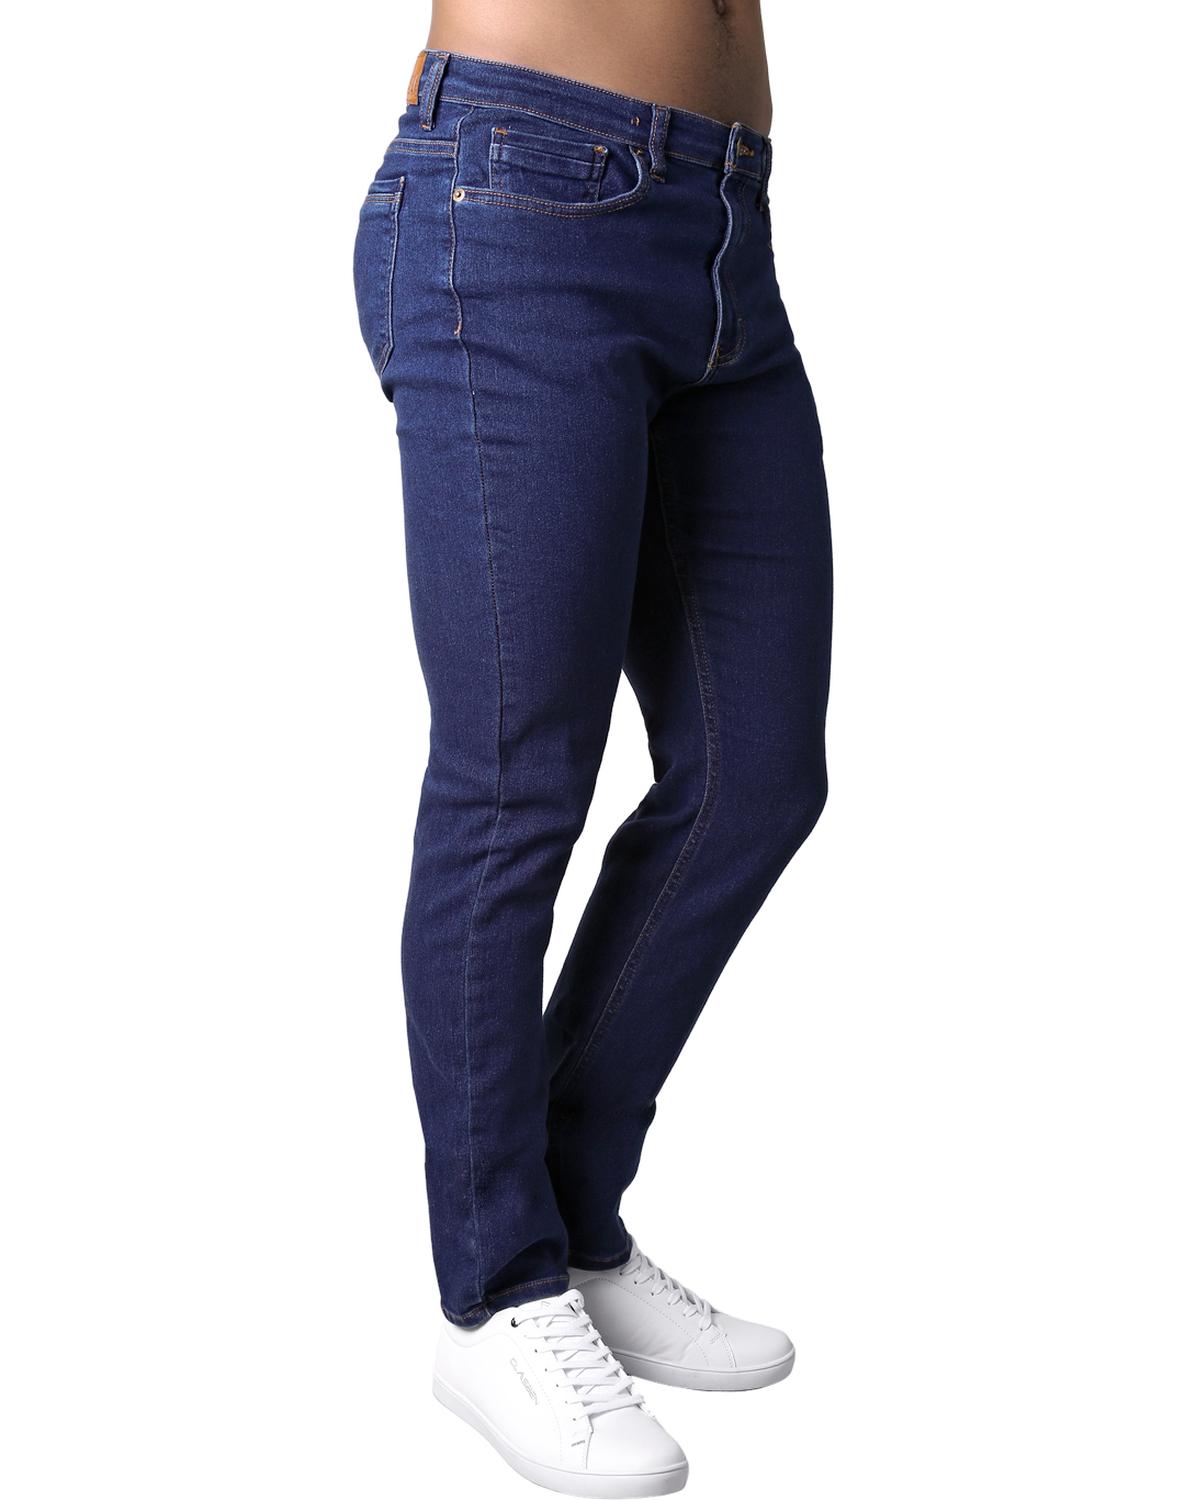 Jeans Básico Slim Hombre Azul Stfashion Ryan 63104423